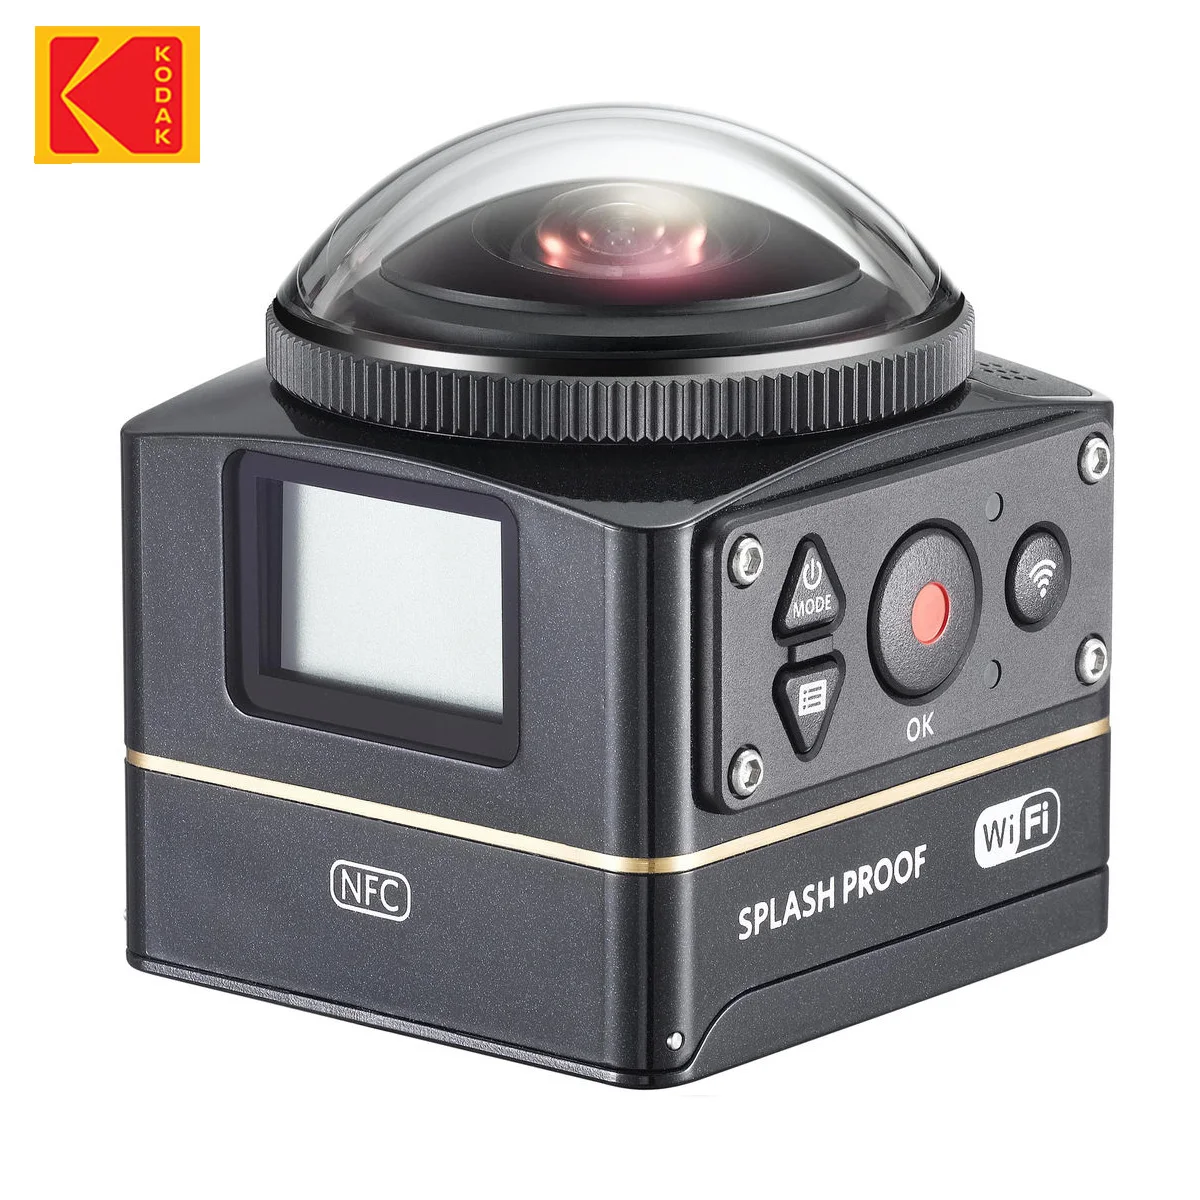 Оригинальная Камера KODAK PIXPRO SP360 4K VR для Видео Youtube 360 Action 1080p Wifi NFC Поддержка IOS Premier Pack